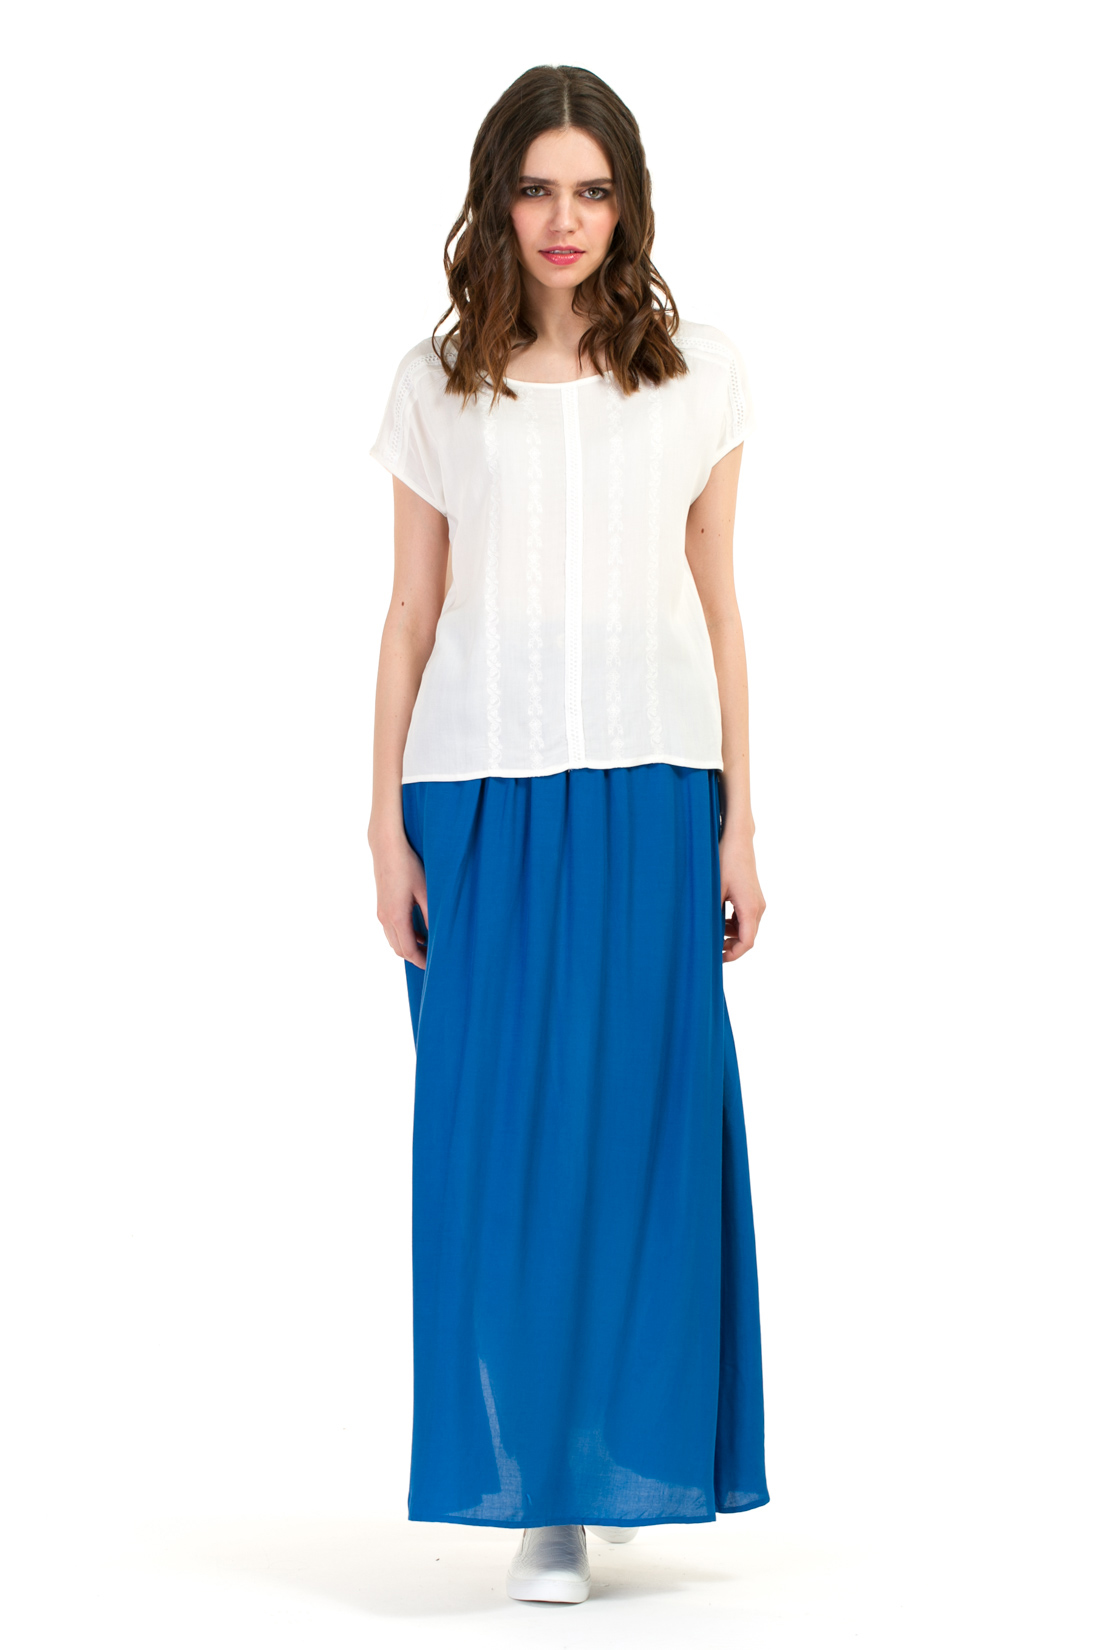 Блузка с вышивкой в крестьянском стиле (арт. baon B197054), размер XXL, цвет белый Блузка с вышивкой в крестьянском стиле (арт. baon B197054) - фото 3